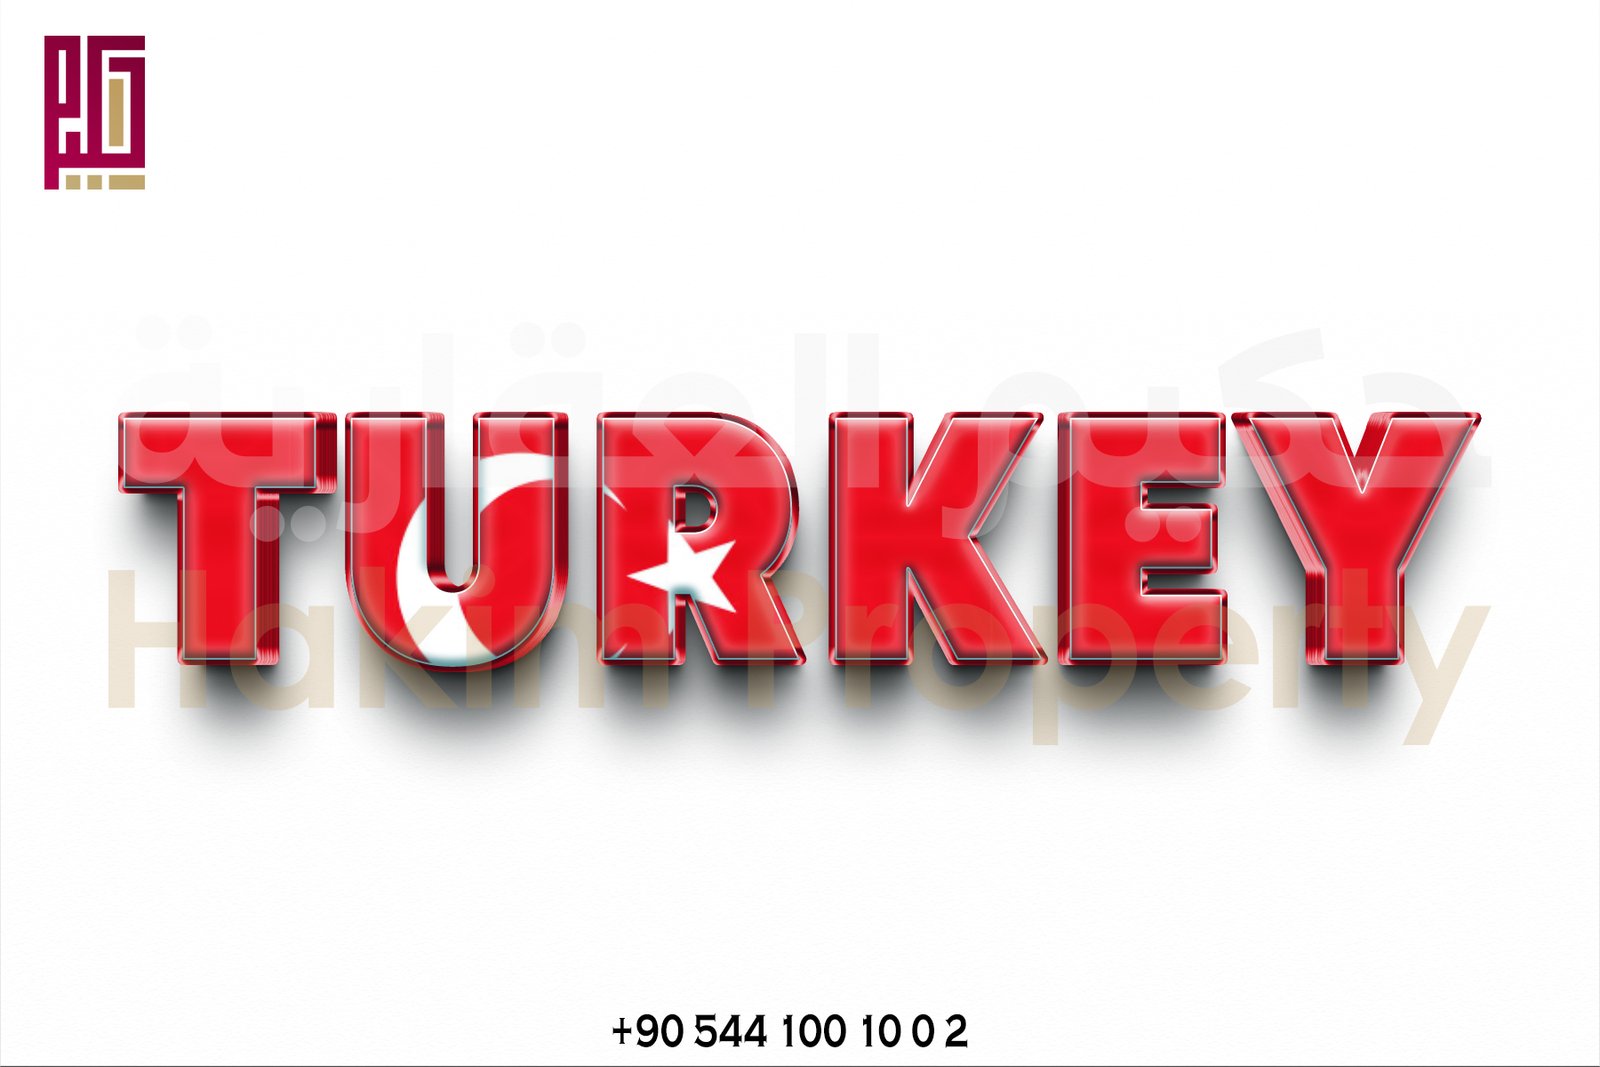 Investissement touristique en Turquie